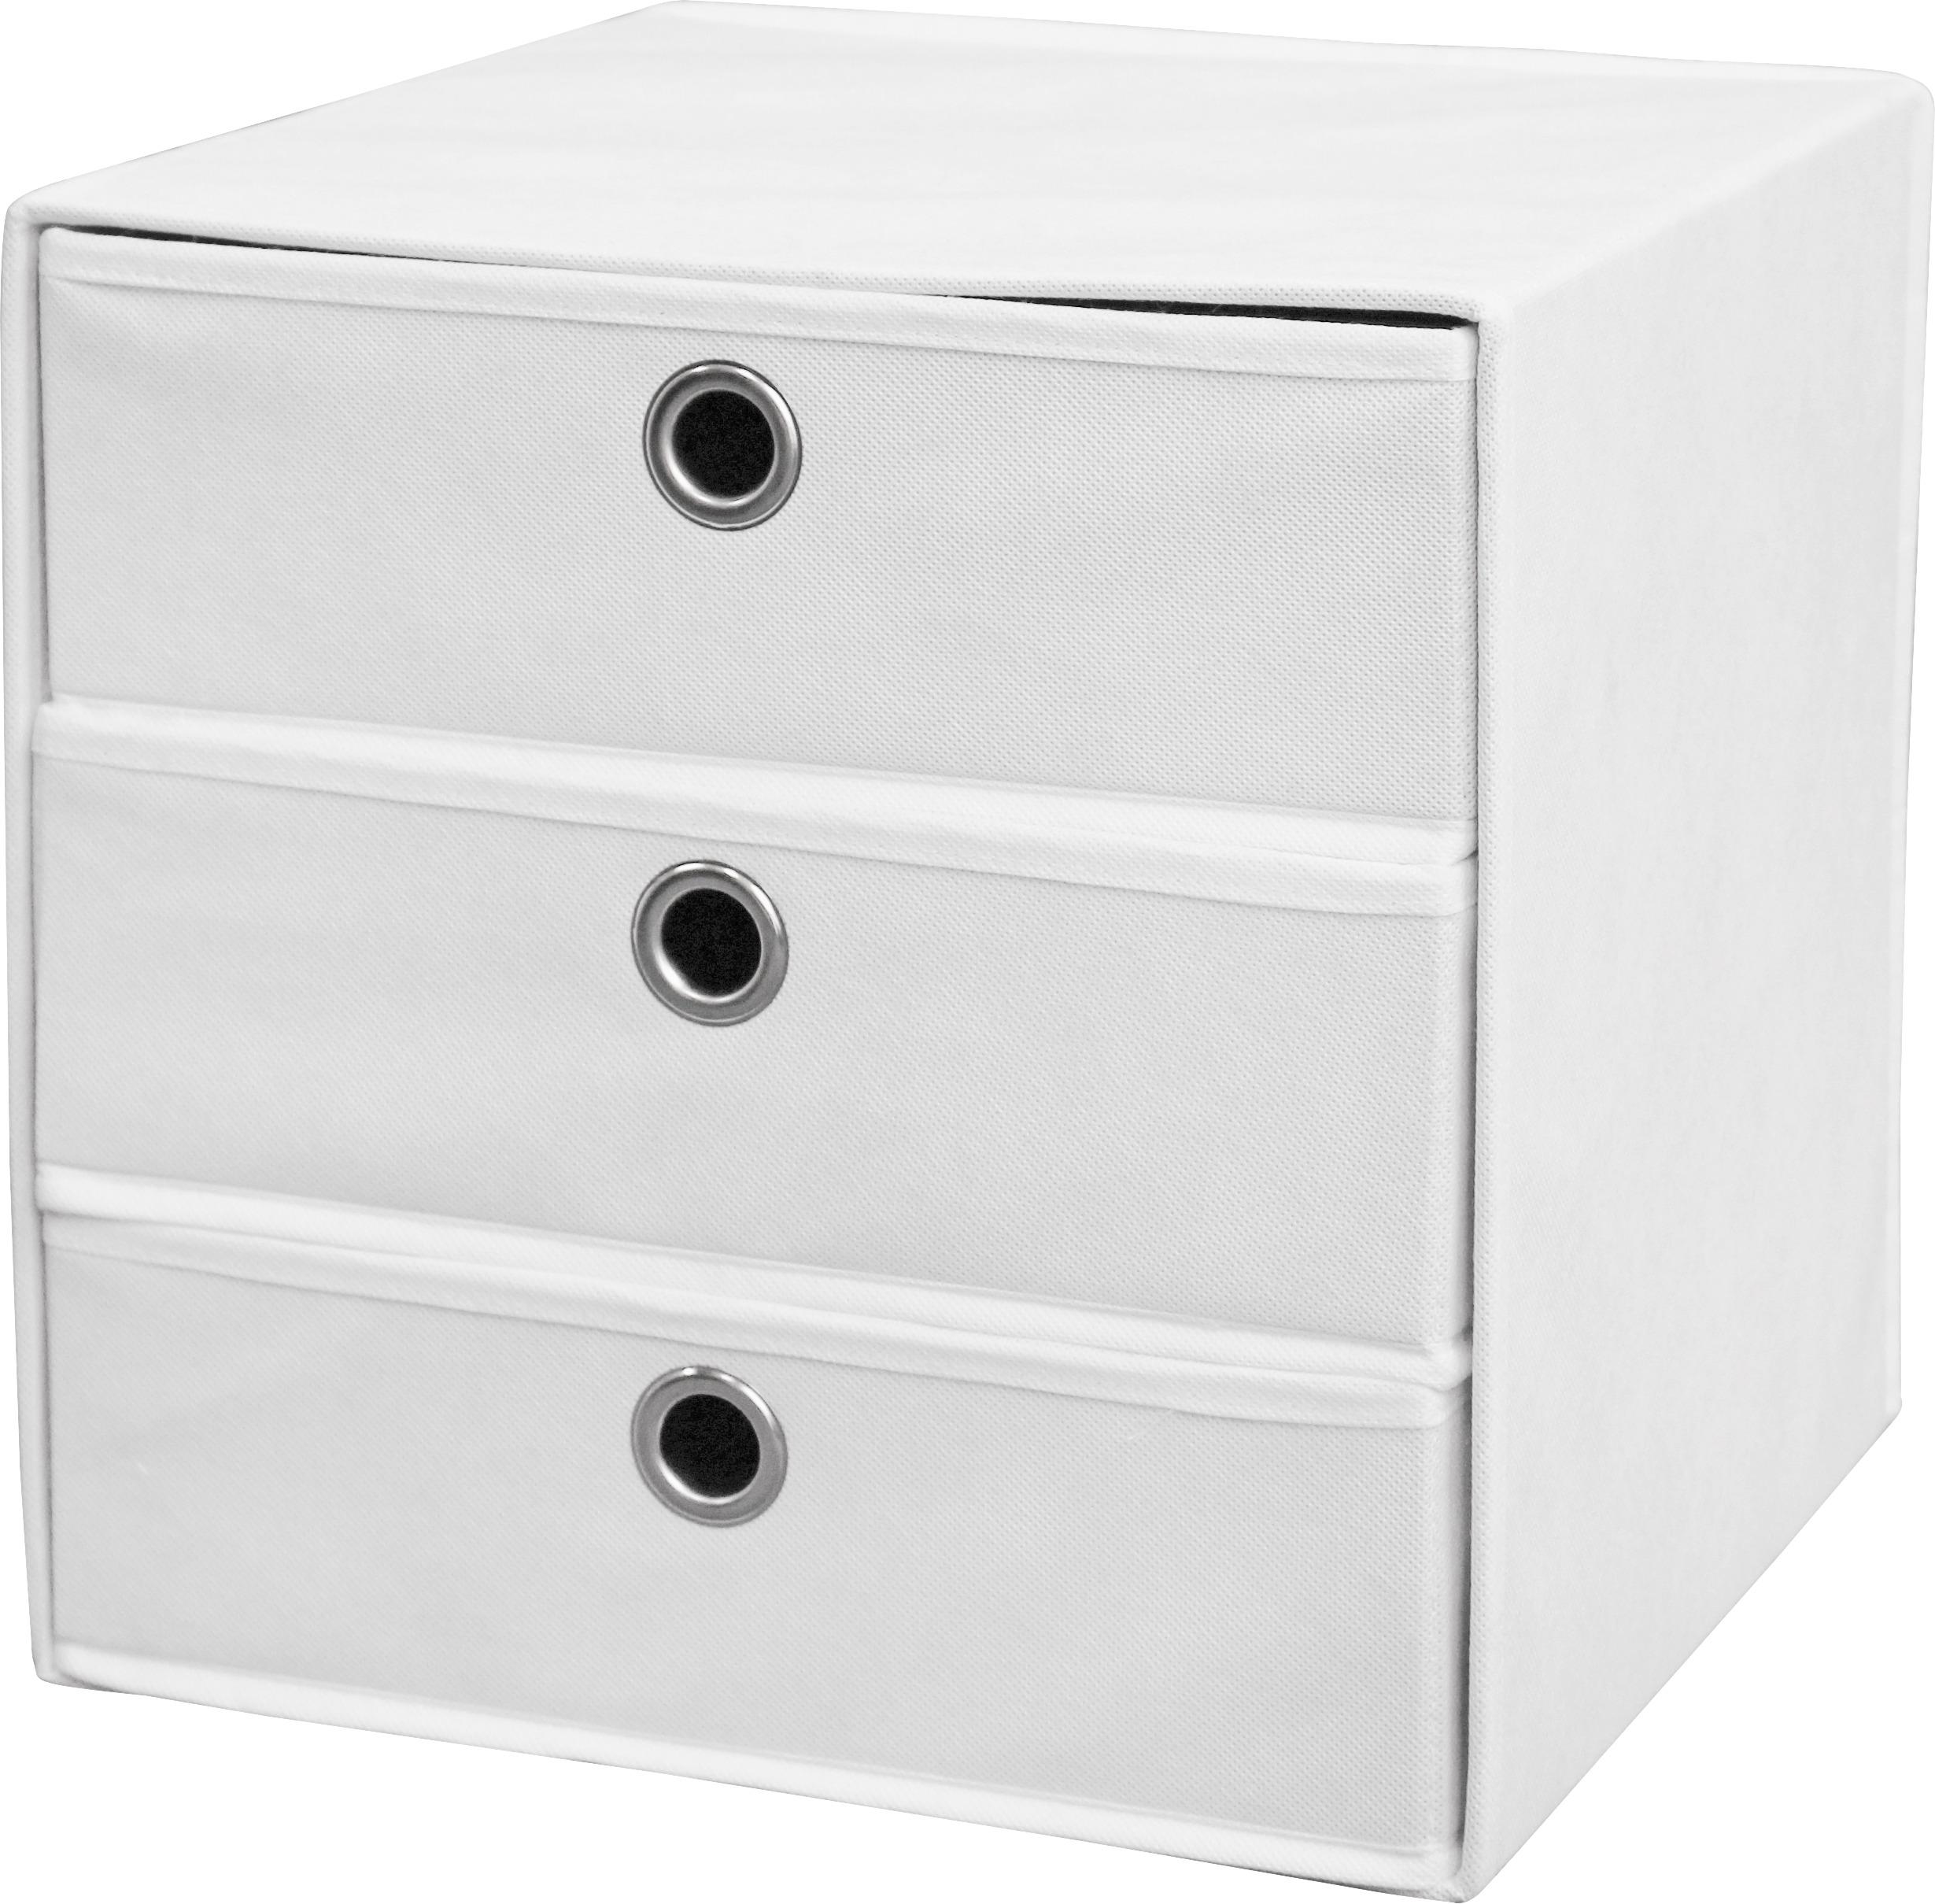 Schubladenbox Lisa Weiß Vlies 3 Laden mit Grifflöchern - Weiß, MODERN, Textil/Metall (32/32/32cm)